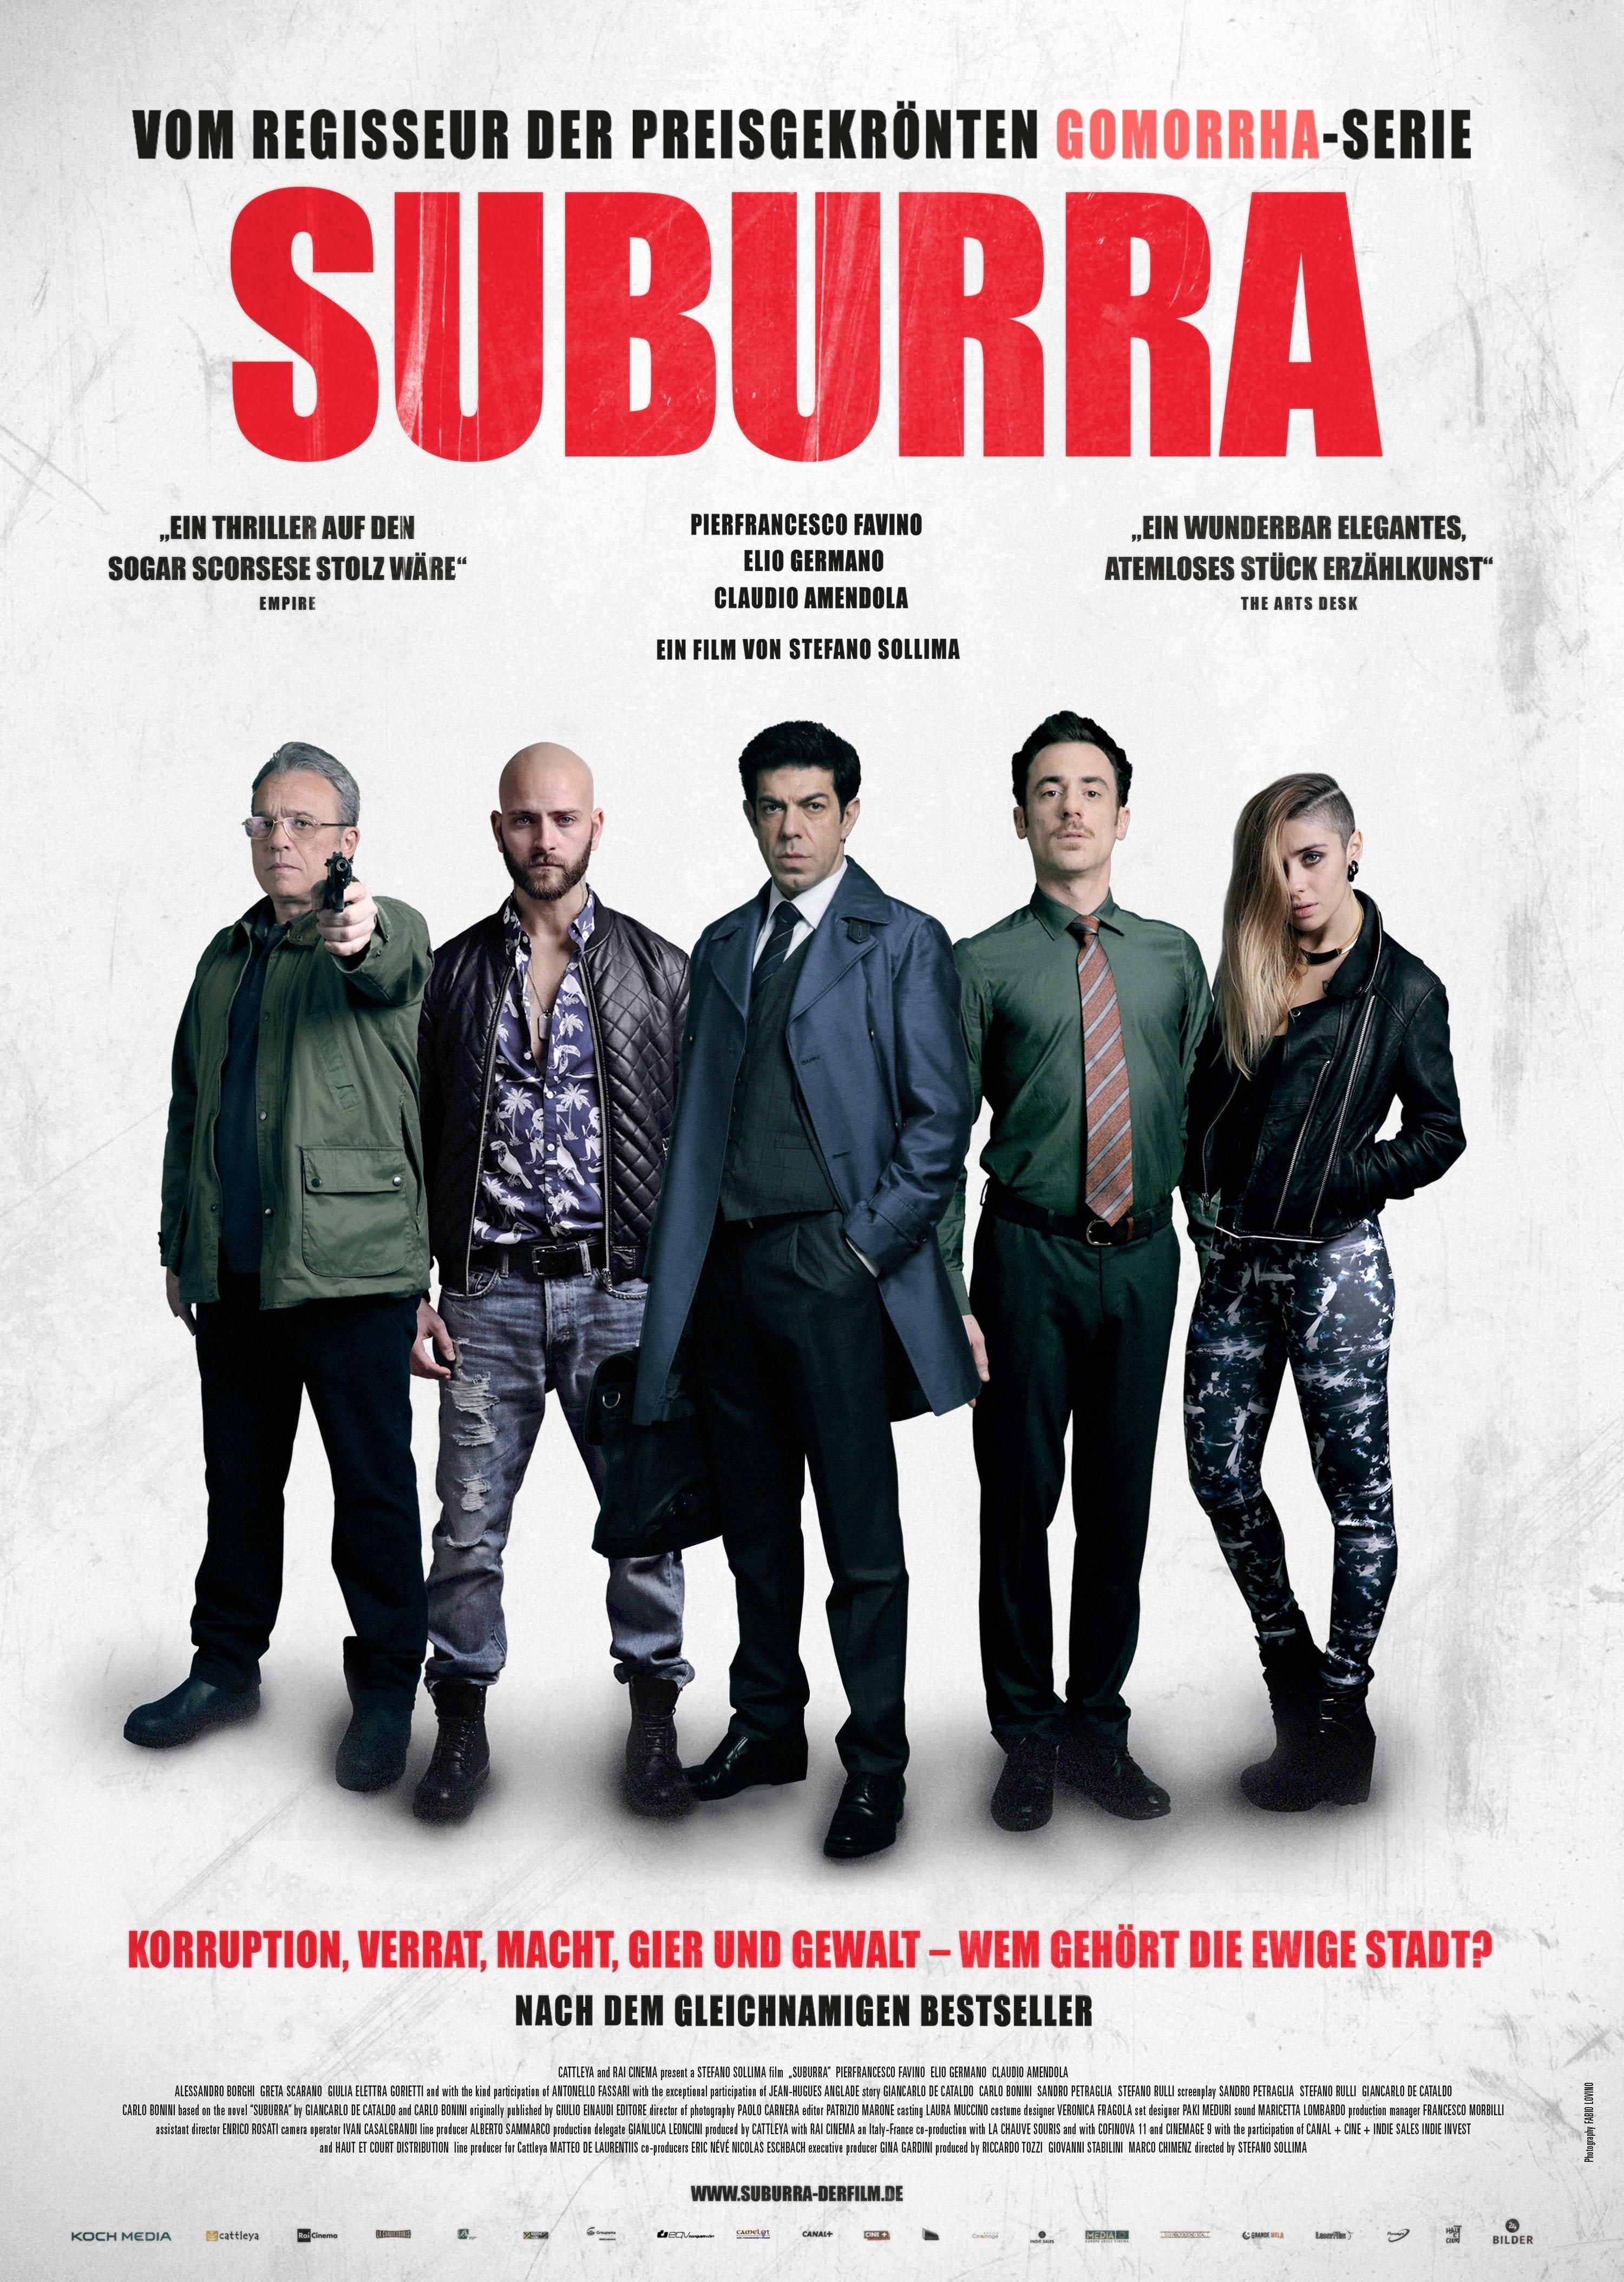 suburra-7-tage-bis-zur-apokalypse-film-information-und-trailer